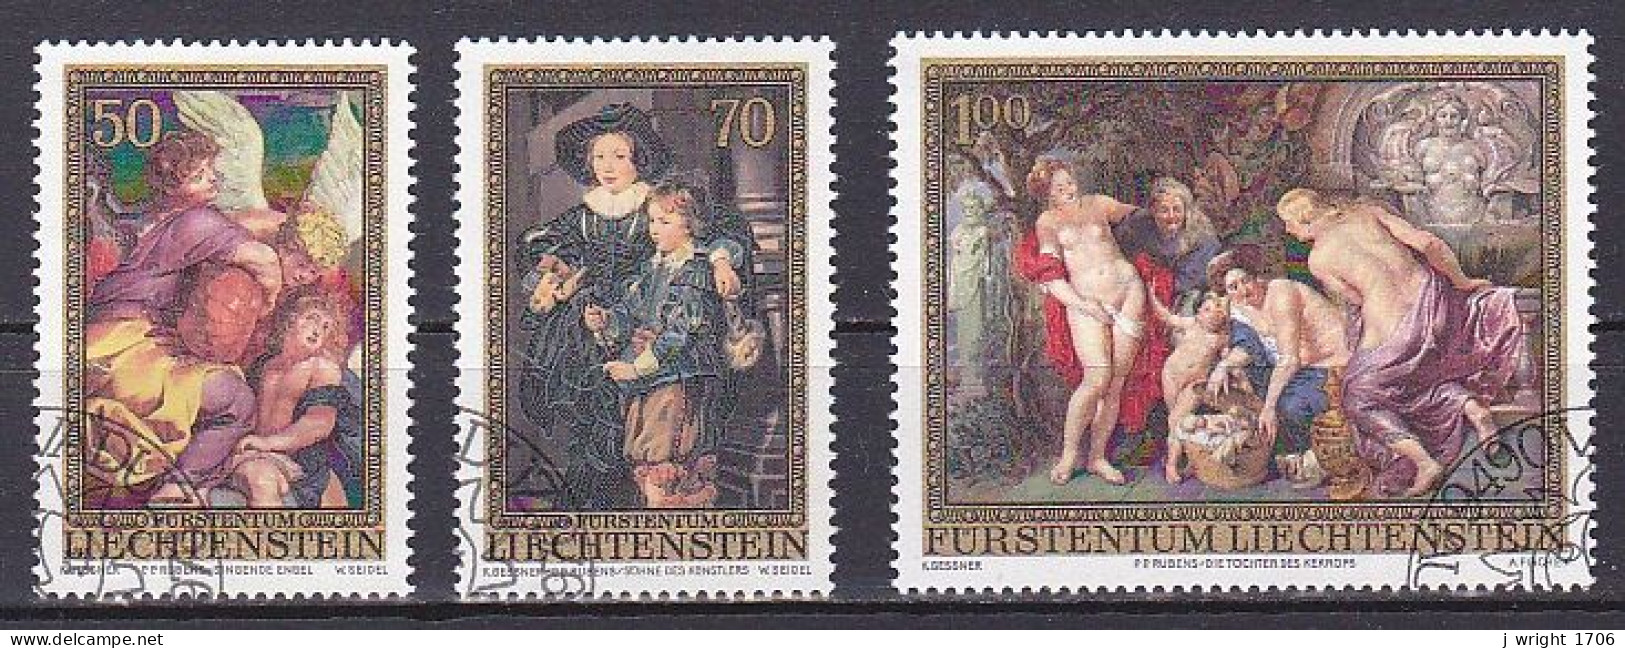 Liechtenstein, 1976, Peter Paul Rubens, Set, CTO - Used Stamps